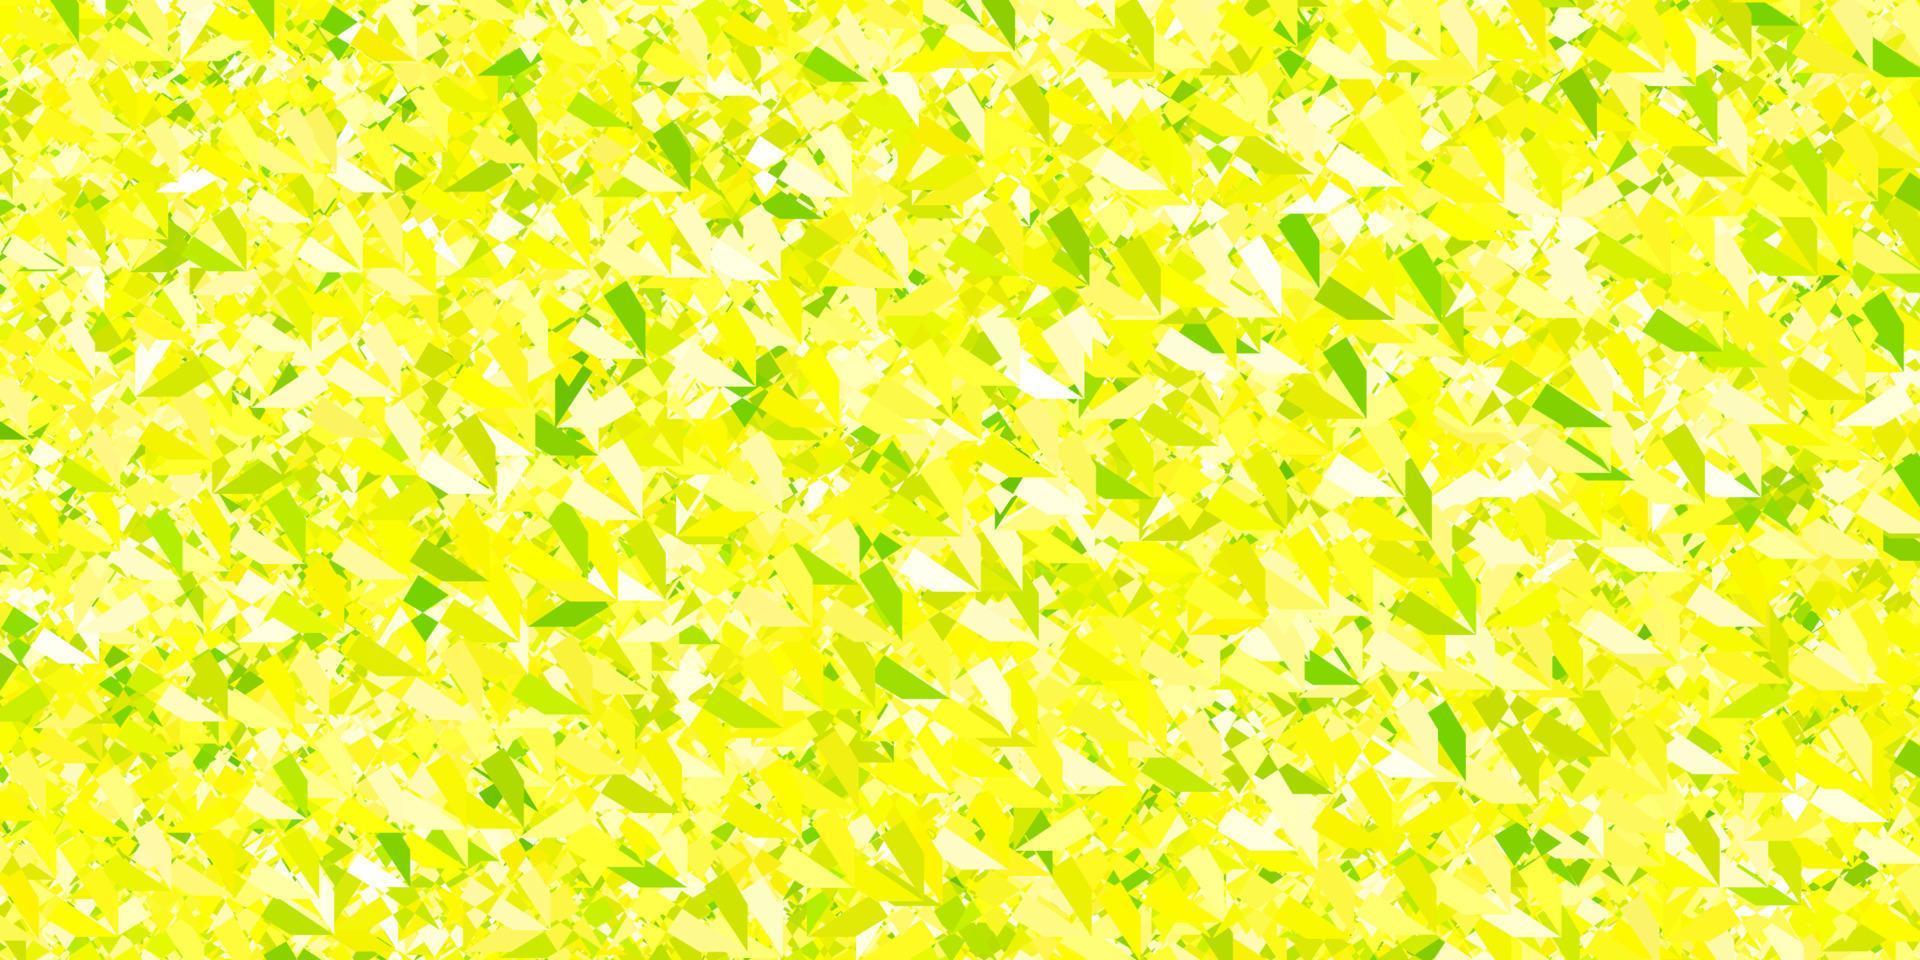 padrão de vetor verde e amarelo escuro com formas poligonais.